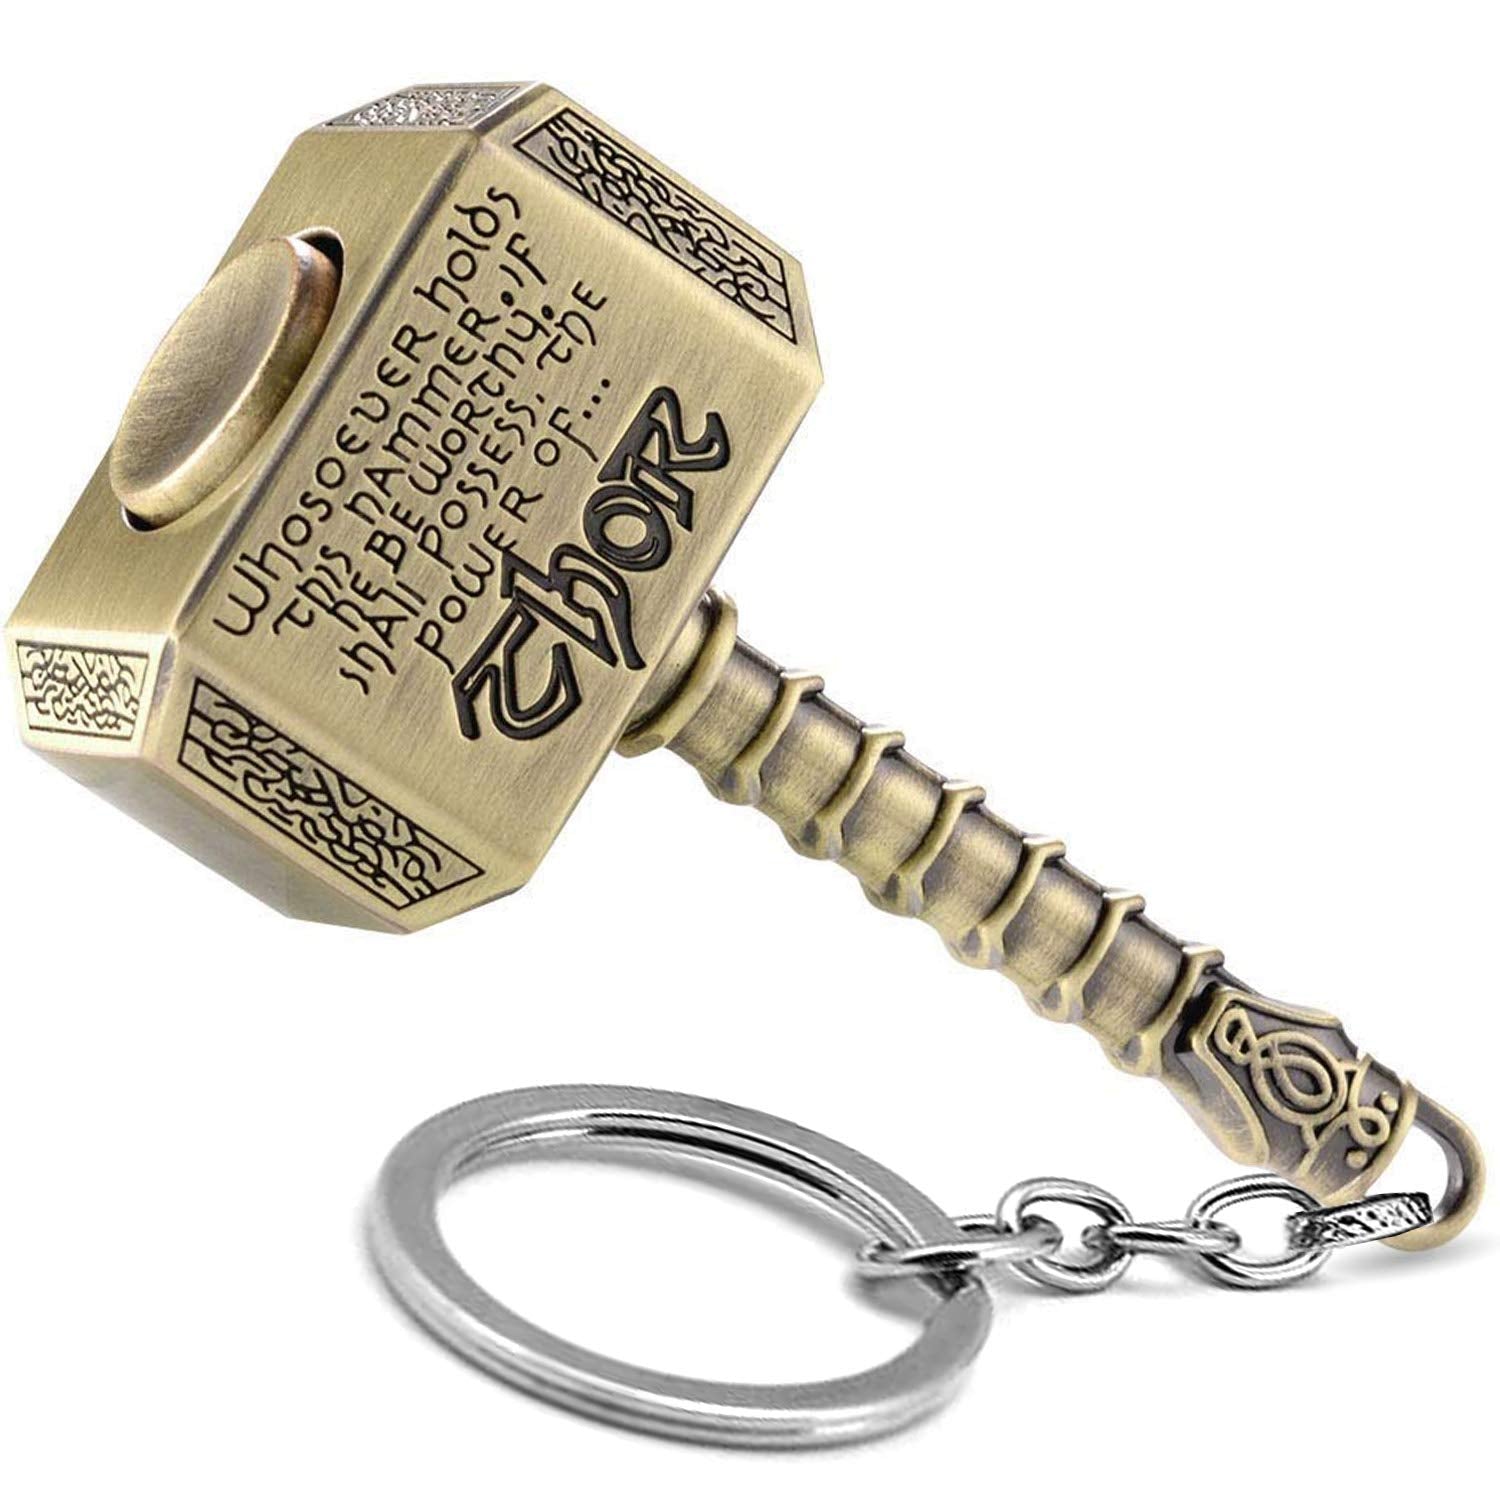 Thor Hammer Fidget Keychain